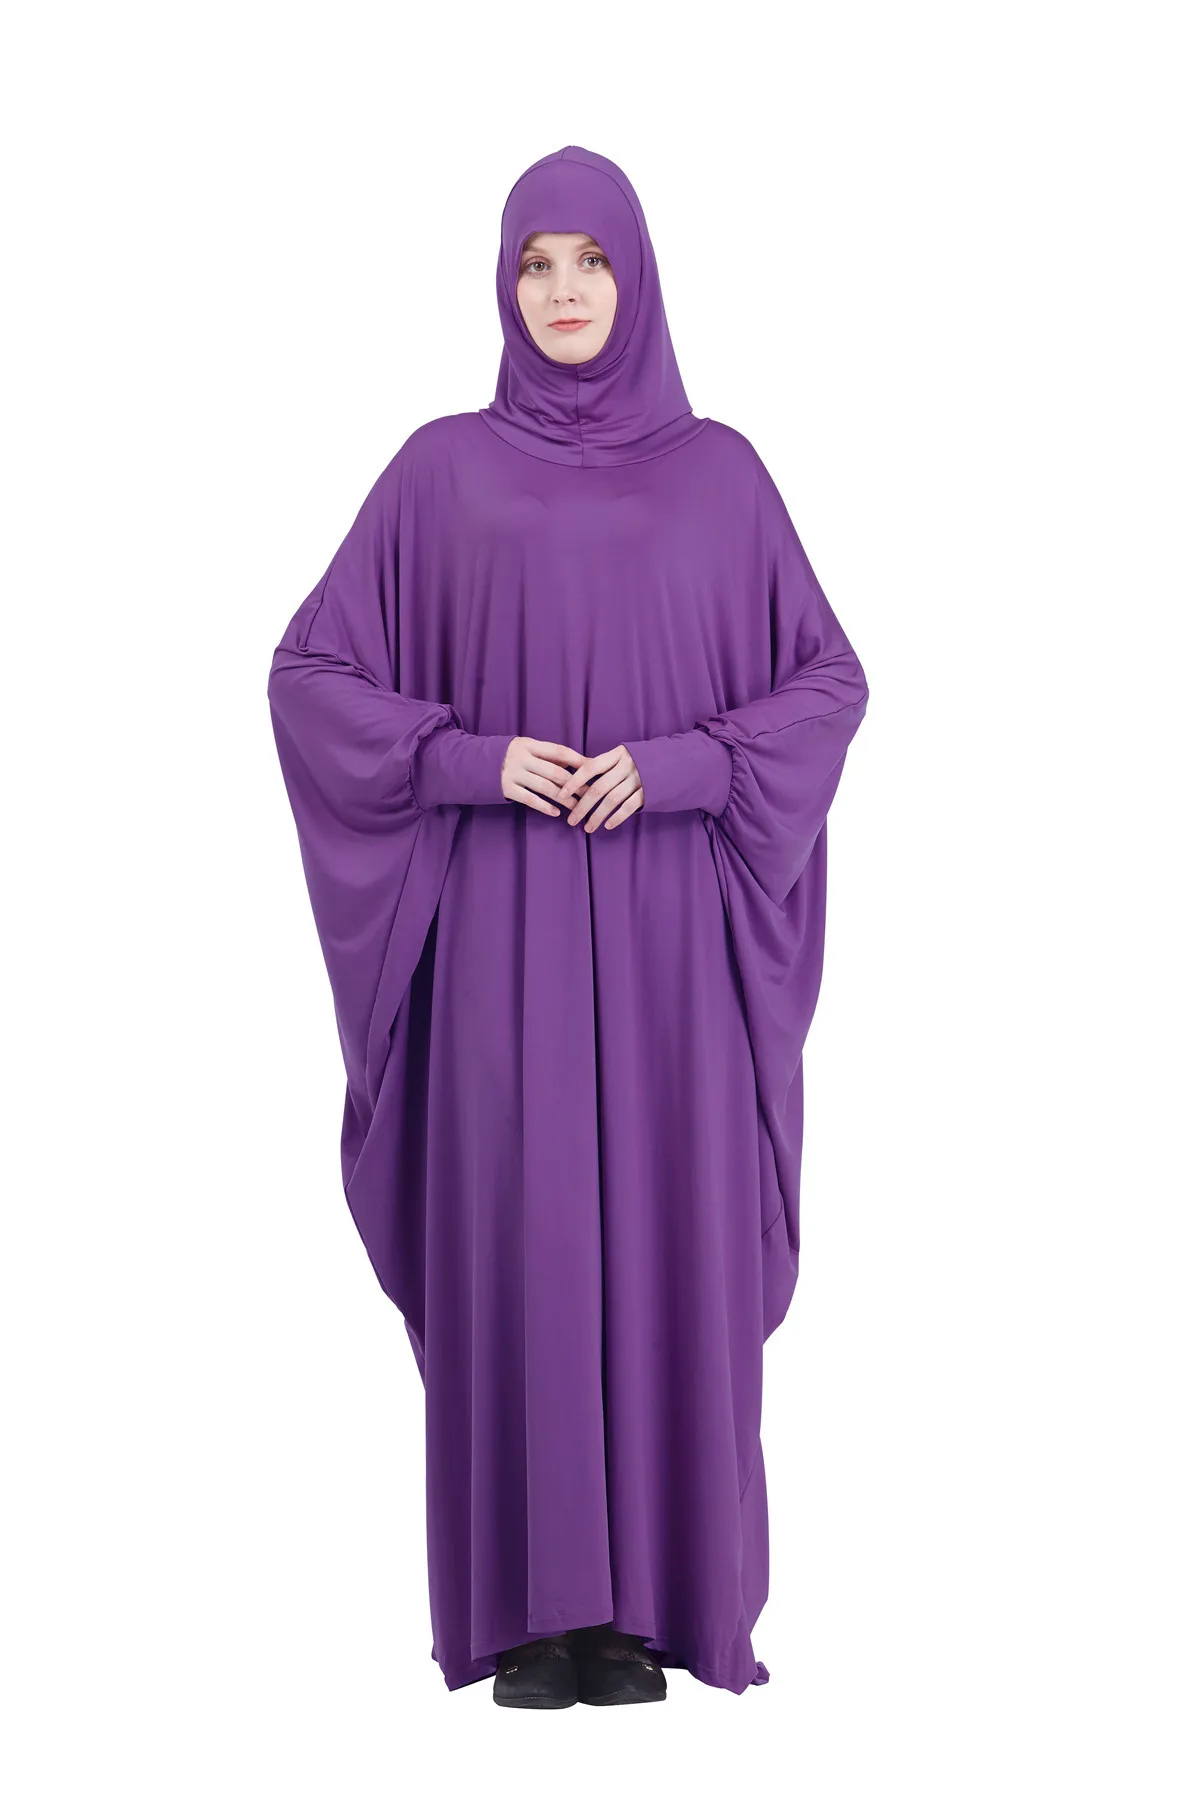 Namaz Elbise Kadın Ramazan İslam Giyim Resmi Müslüman Konfeksiyon Kapşonlu Dubai Türkiye Namaz Uzun Jurken Abaya Başörtüsü Kimono 2